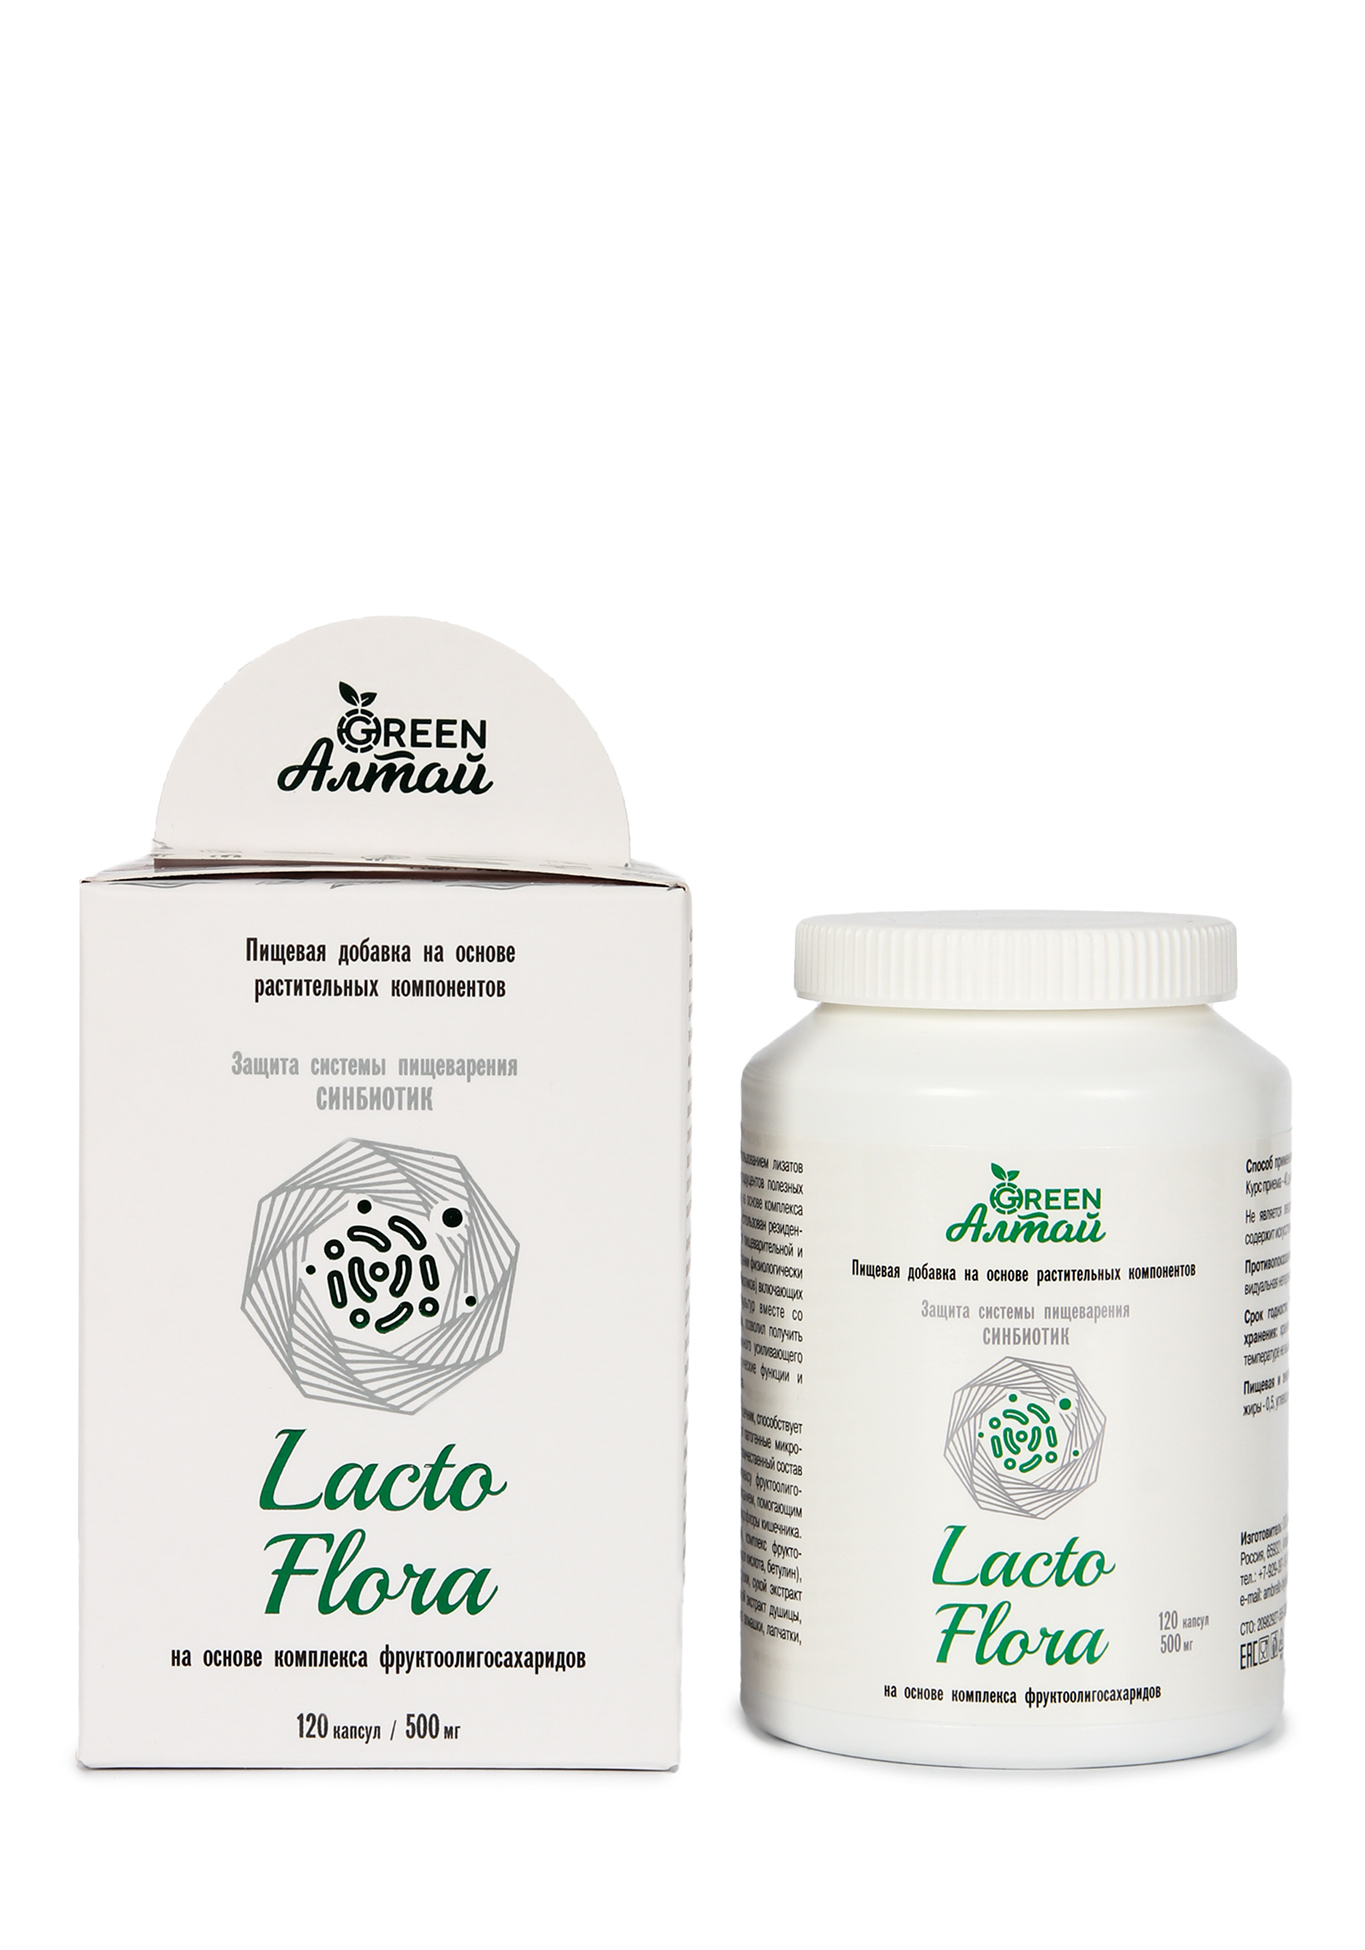 Lacto Flora "Защита пищеварения,синбиотик" Green Алтай - фото 2